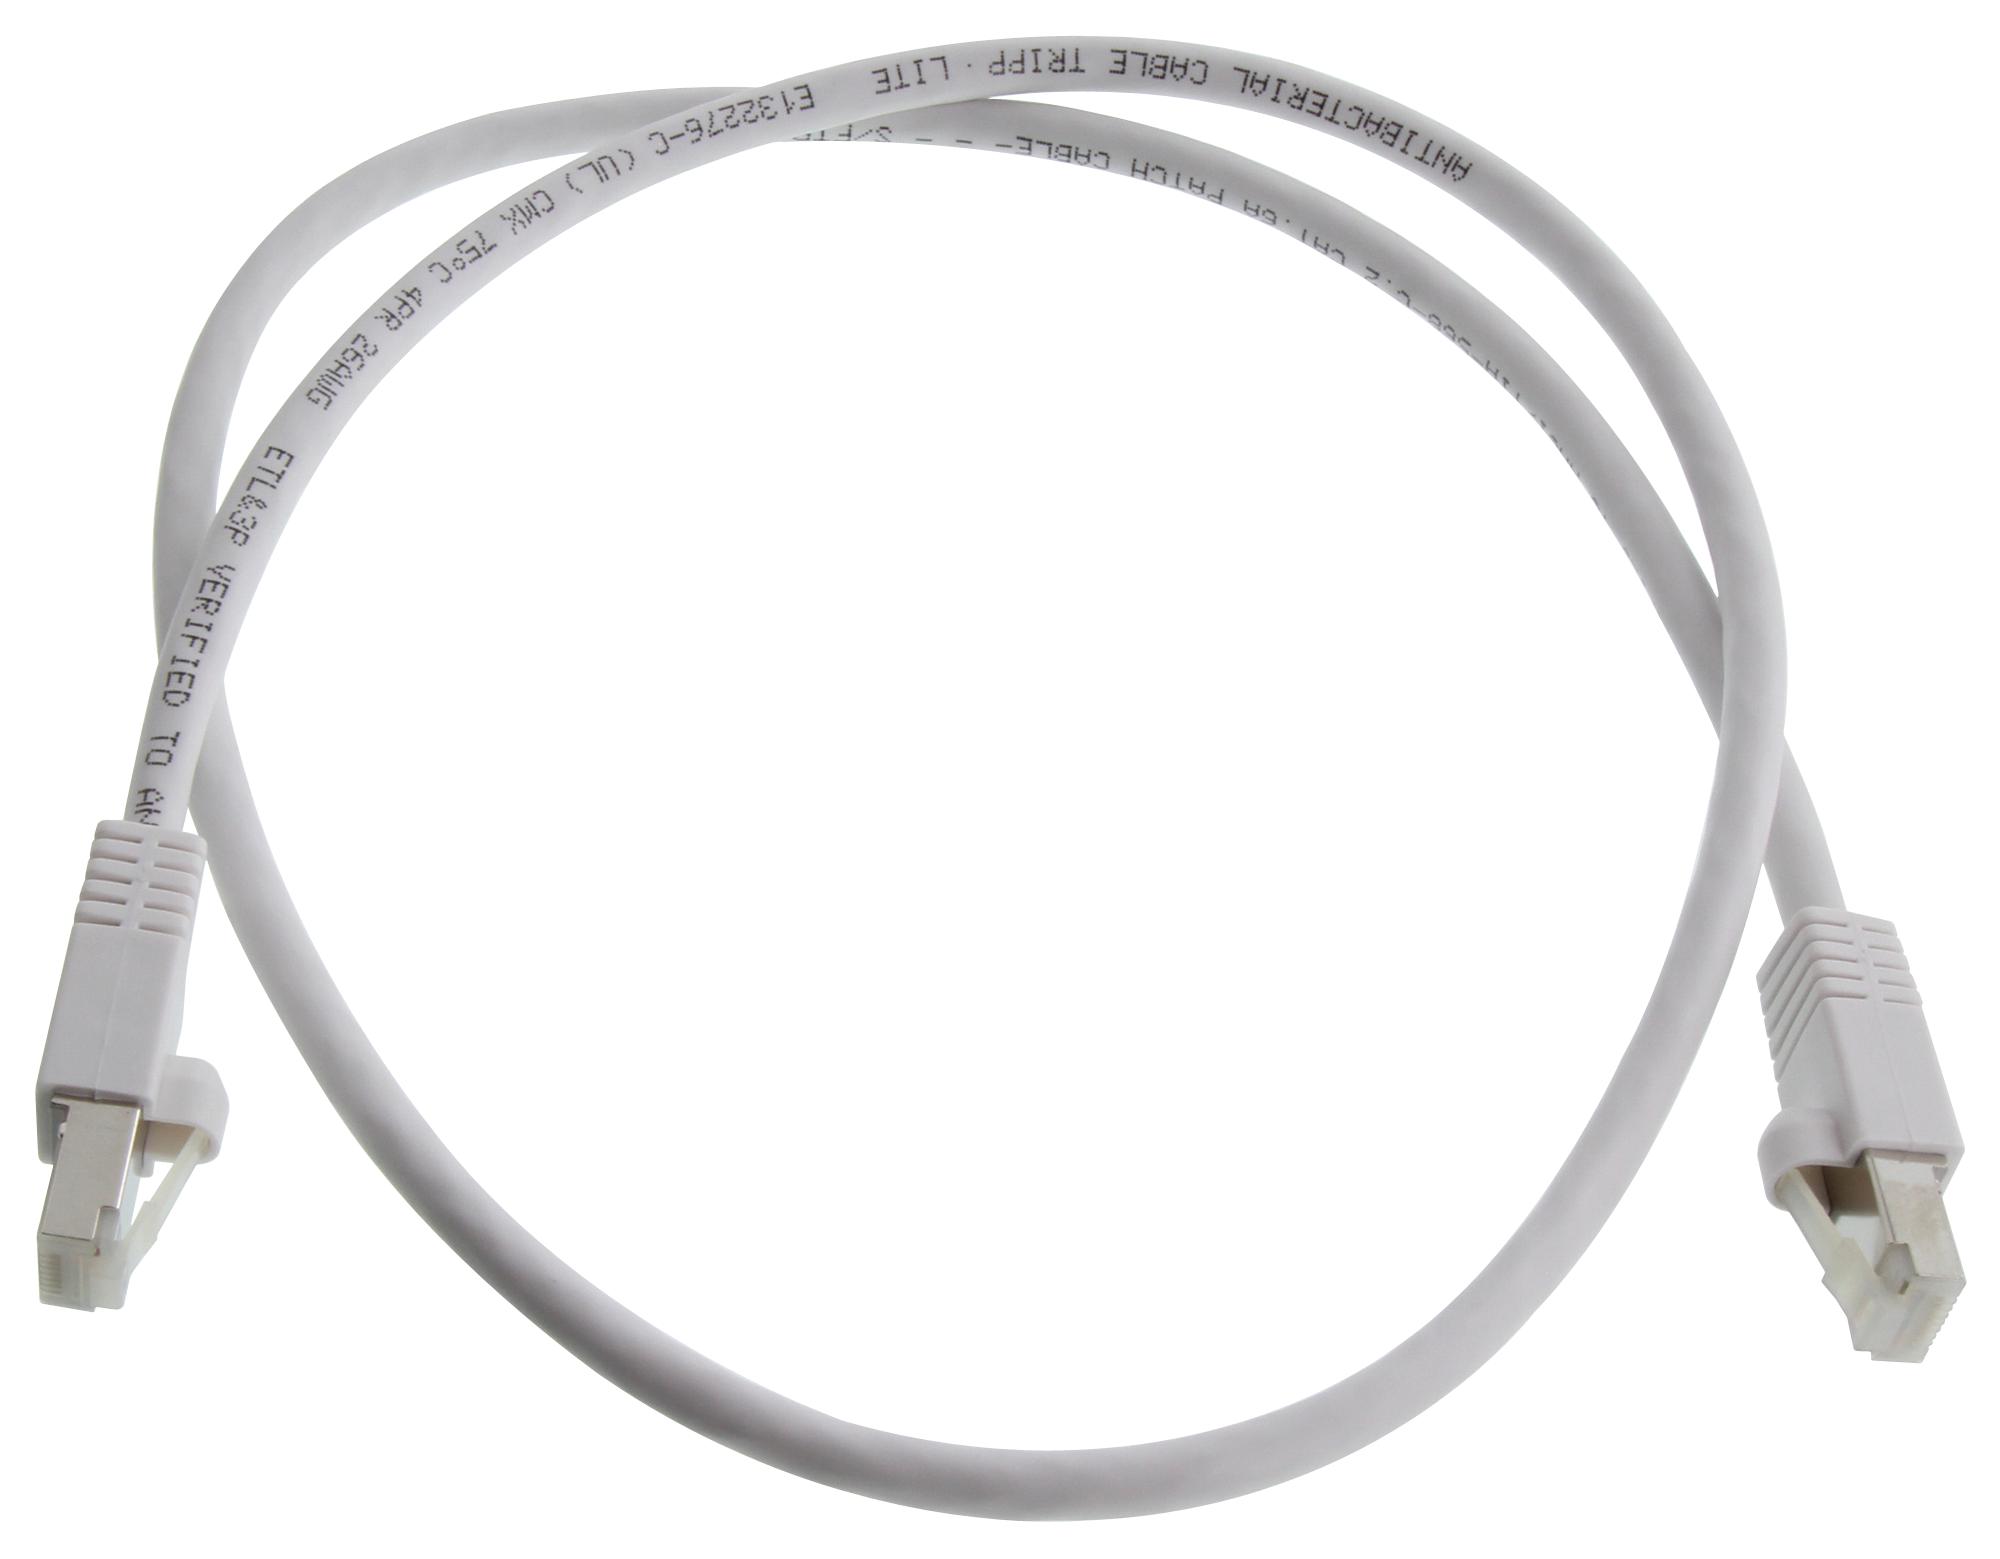 Eaton Tripp Lite N262Ab-003-Wh Enet Cable, Rj45 Plug-Plug, 3Ft, White